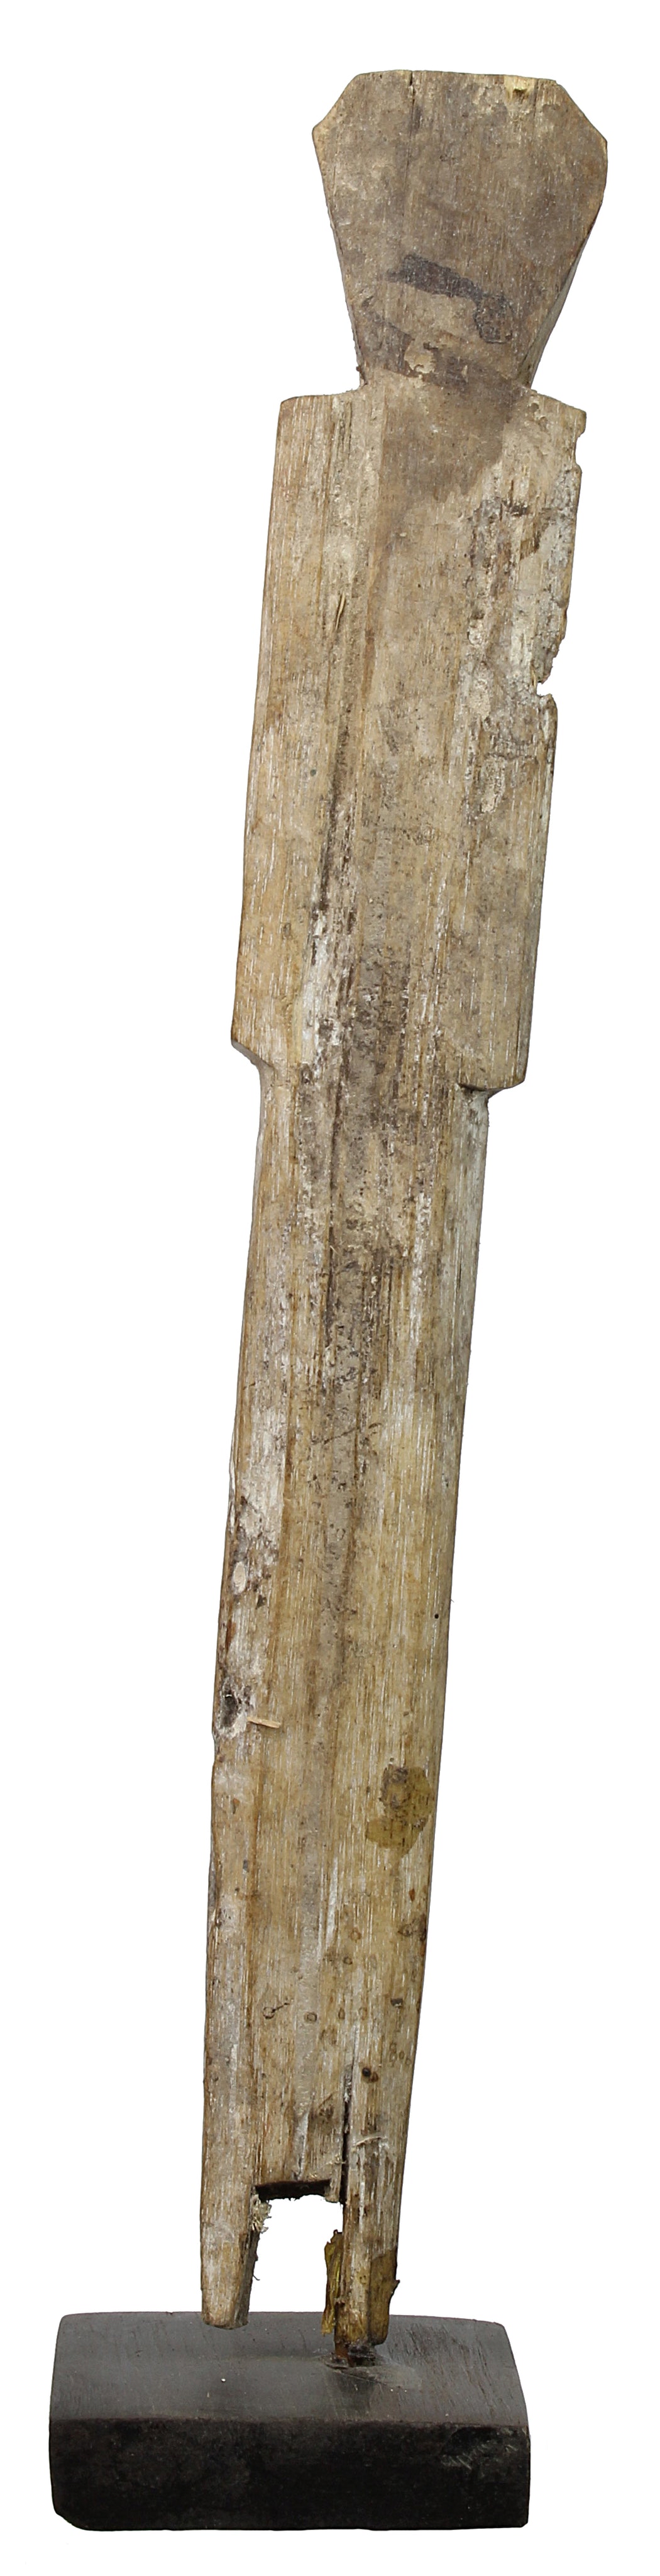 Vintage Ewe Ancestor Figure - Niger Bend